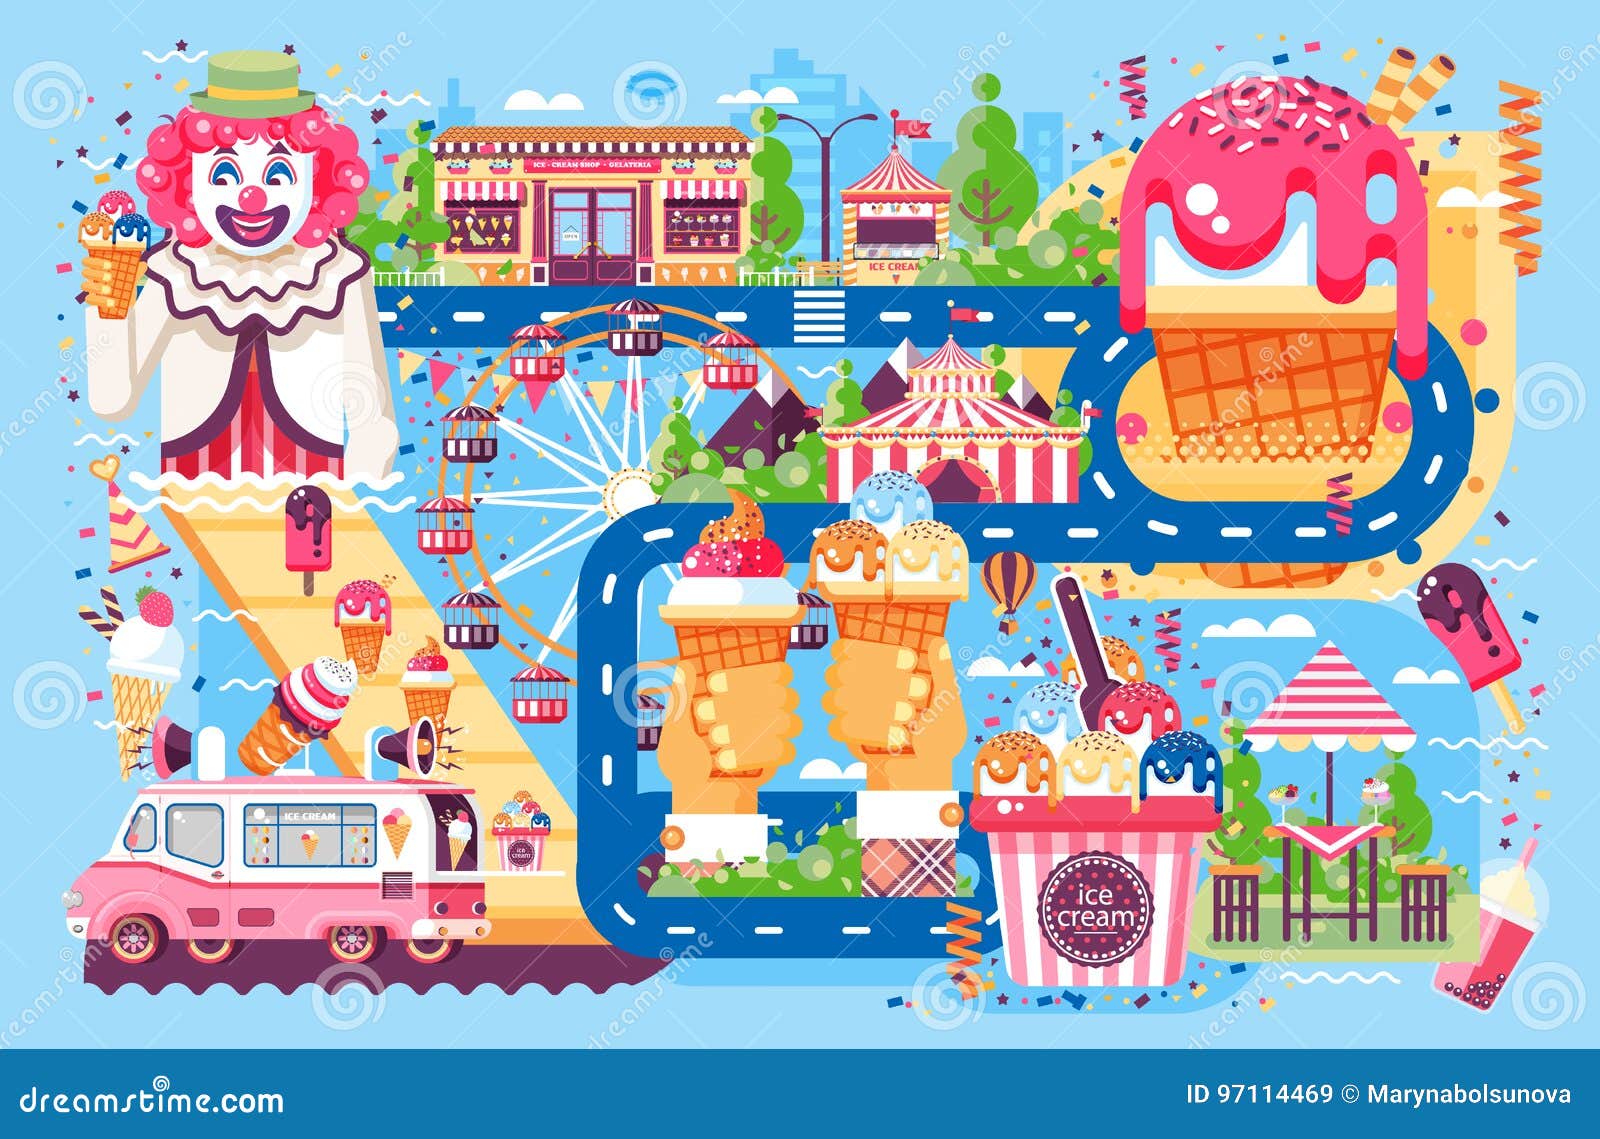 Карта сладость. Карта сладостей. Аттракцион из сладостей. Площадь с развлечениями и сладостями для детей. Еда в парке аттракционов рисунок вектор.